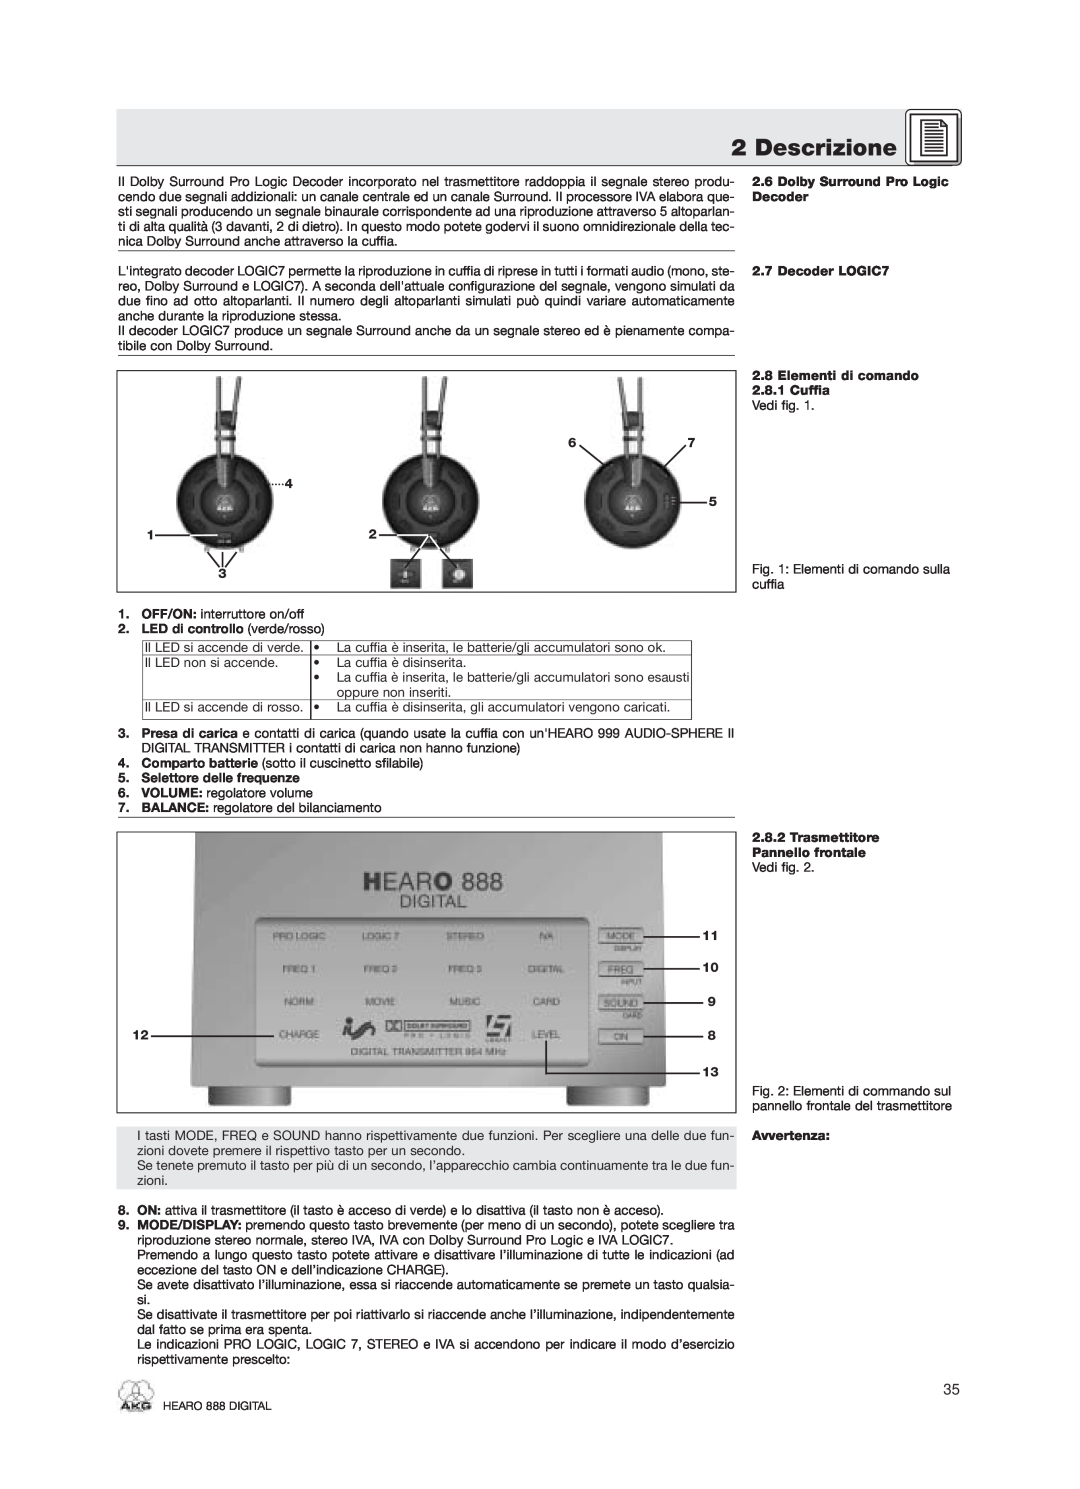 AKG Acoustics HEARO 888 specifications Descrizione, Dolby Surround Pro Logic 